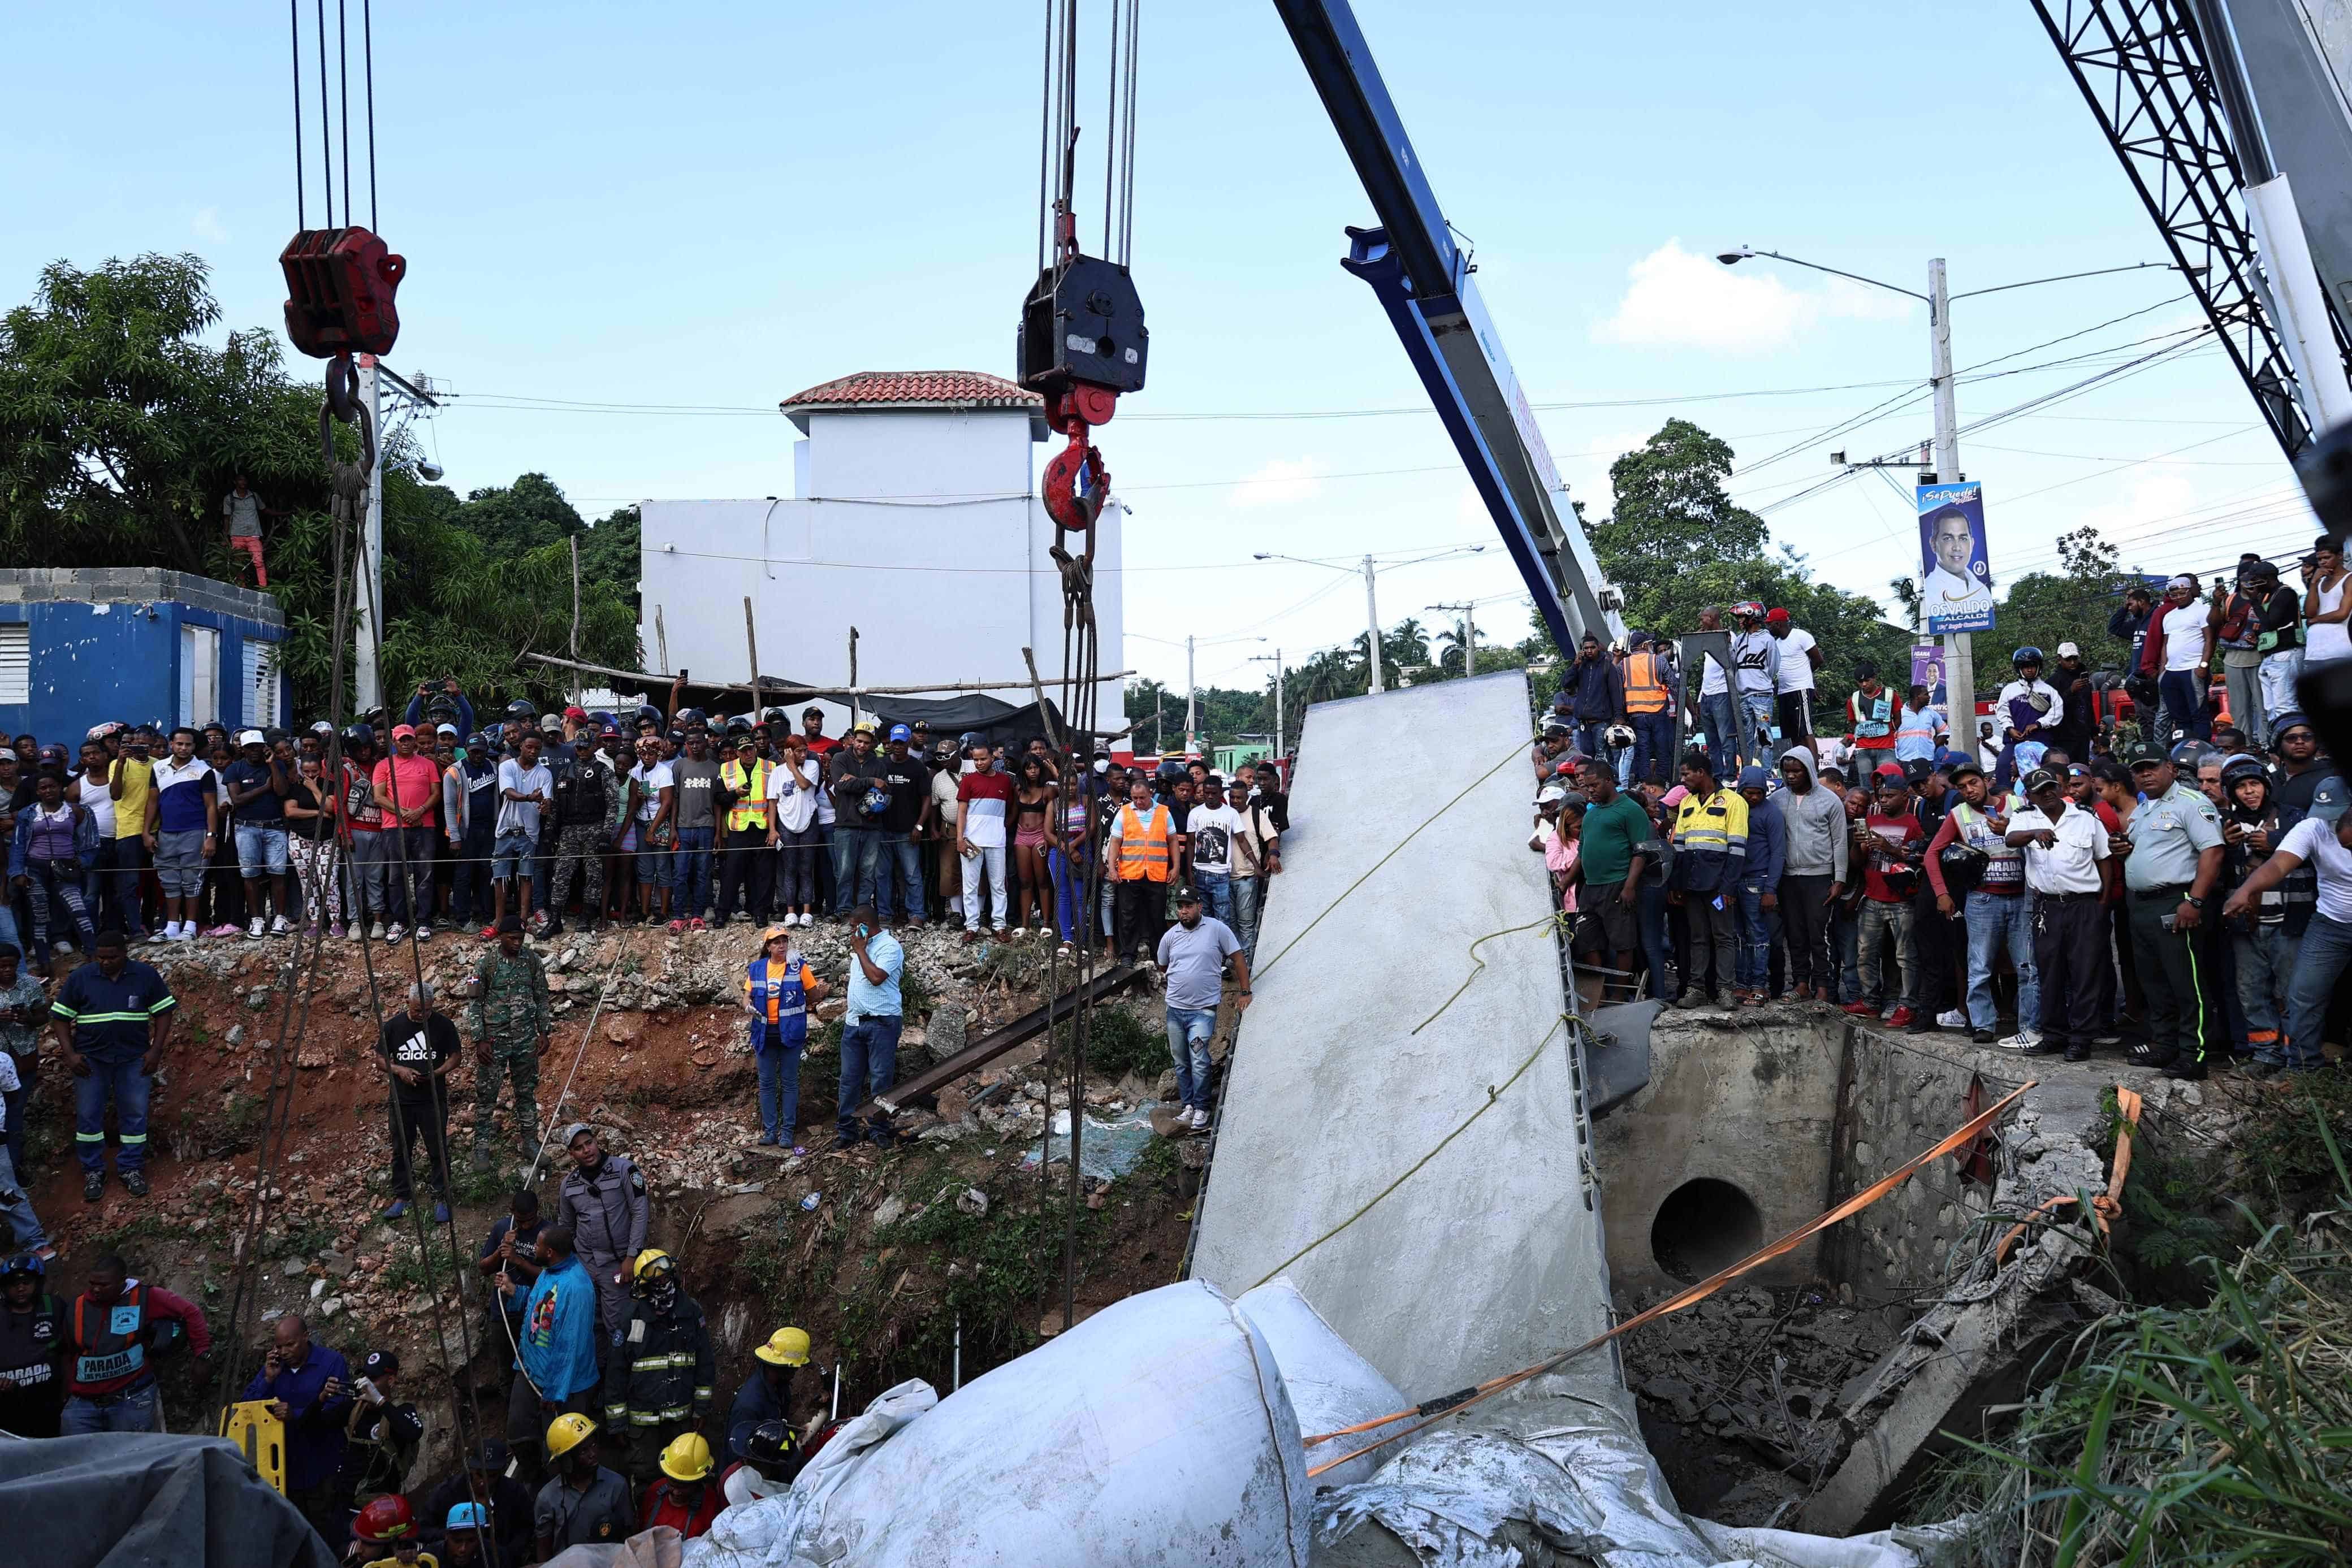 Los organismos de seguridad trabajan intensamente para sacar a las víctimas del autobús que quedó sepultado por la patana en accidente de Haina, San Cristóbal.